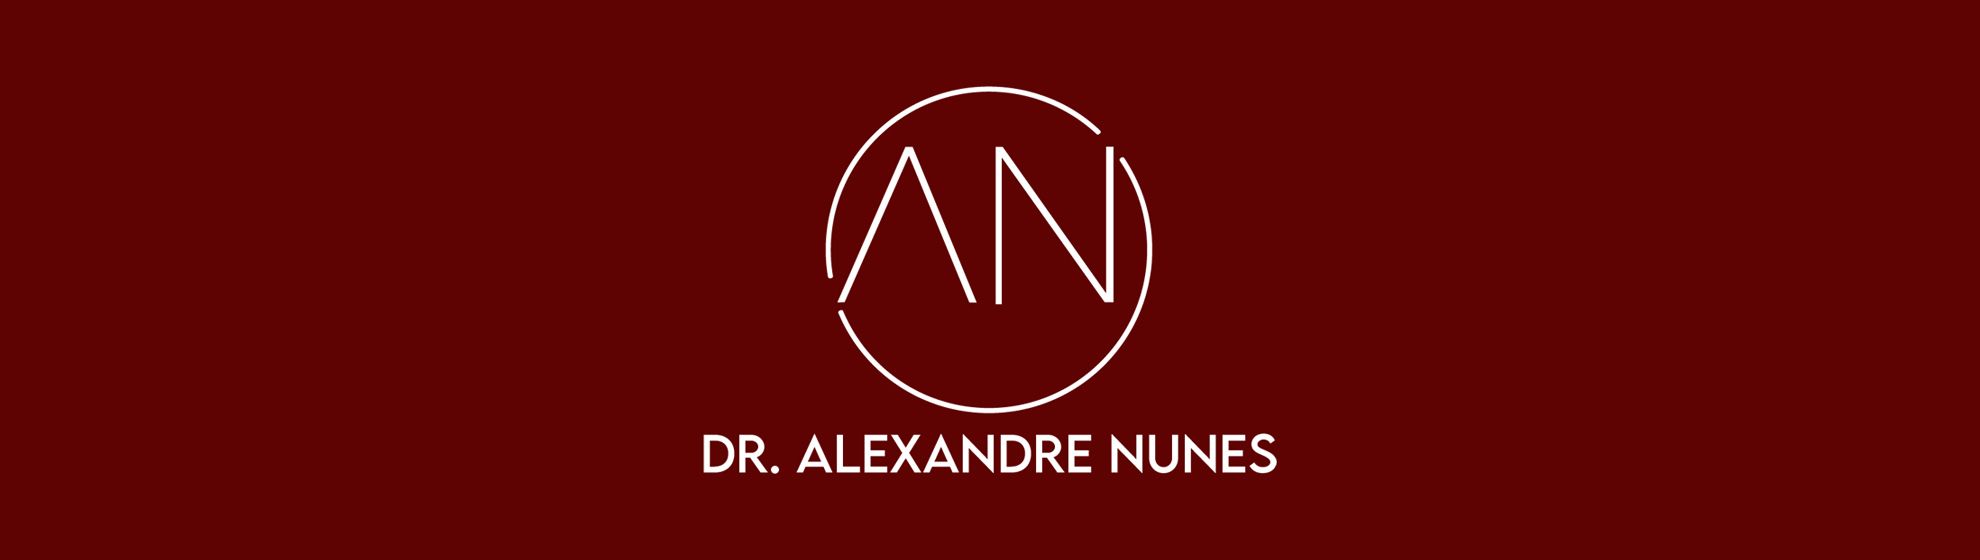 Dr. Alexandre Nunes